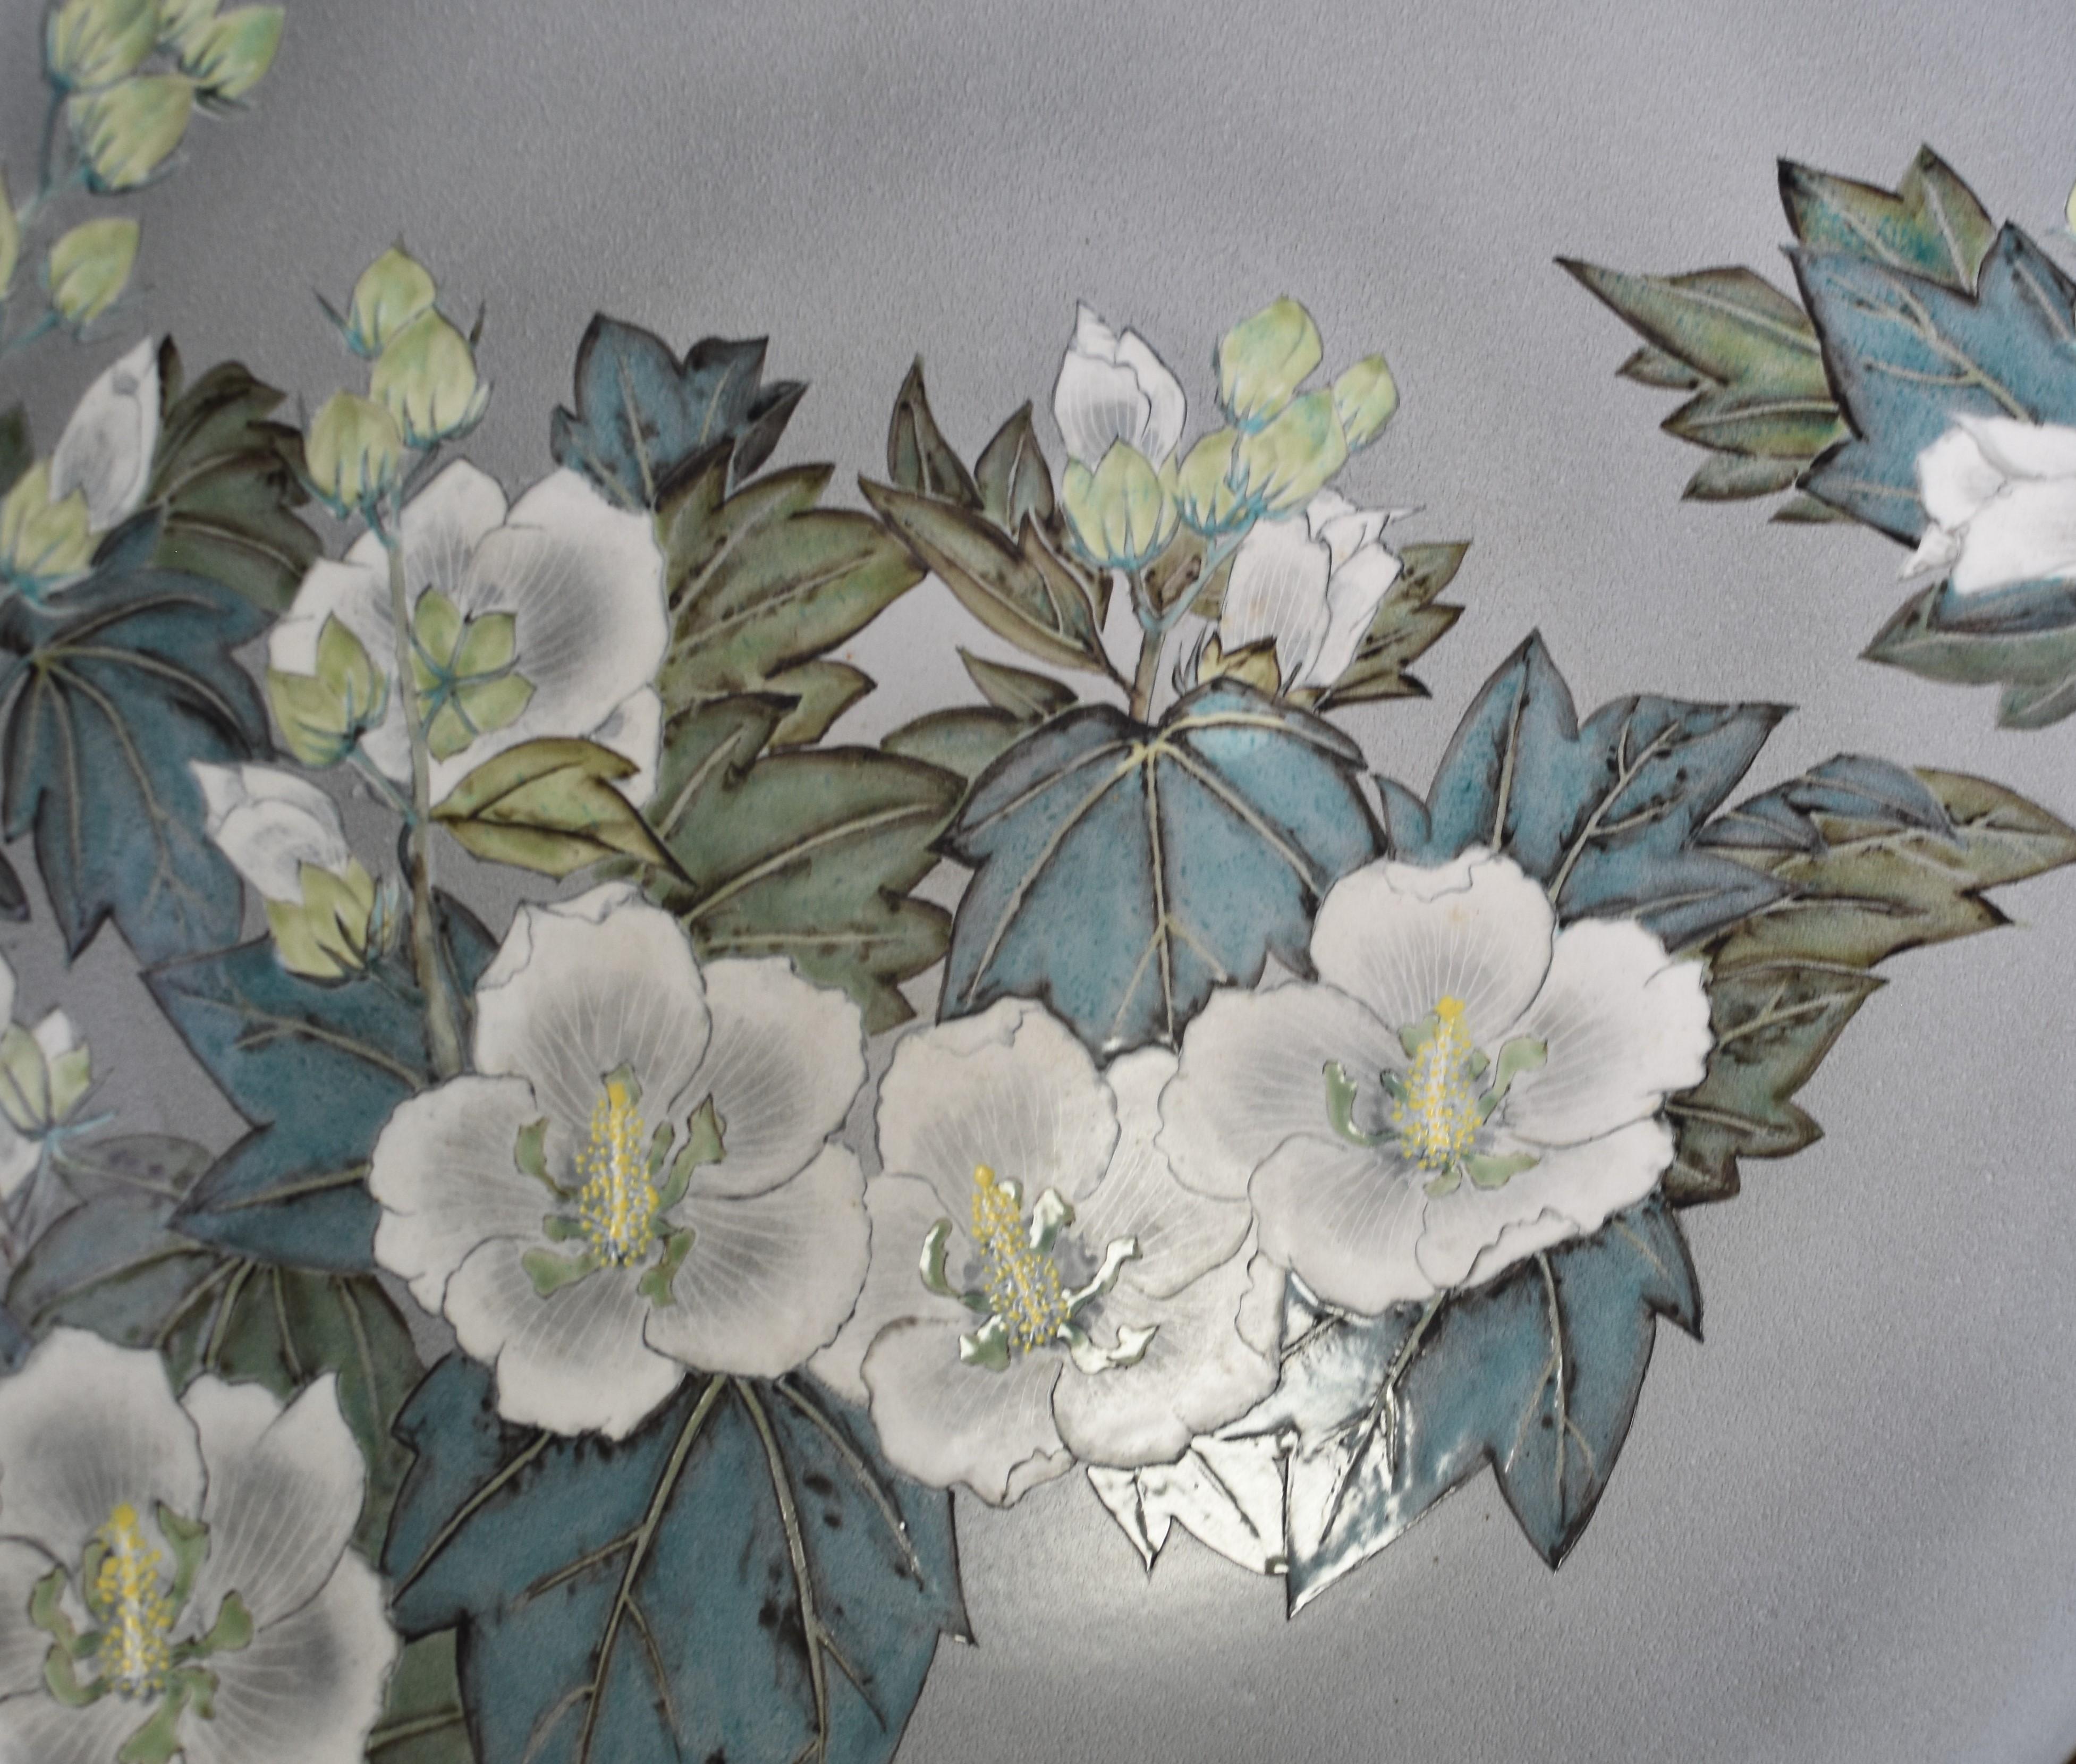 Exquisite sehr große zeitgenössische Keramik tiefe Ladegerät / Tafelaufsatz, handbemalt in grün, blau und weiß auf einem attraktiven Silber / grau Hintergrund, um eine atemberaubende fett Blume und Laub-Motiv, das einen auffälligen Kontrast gegen